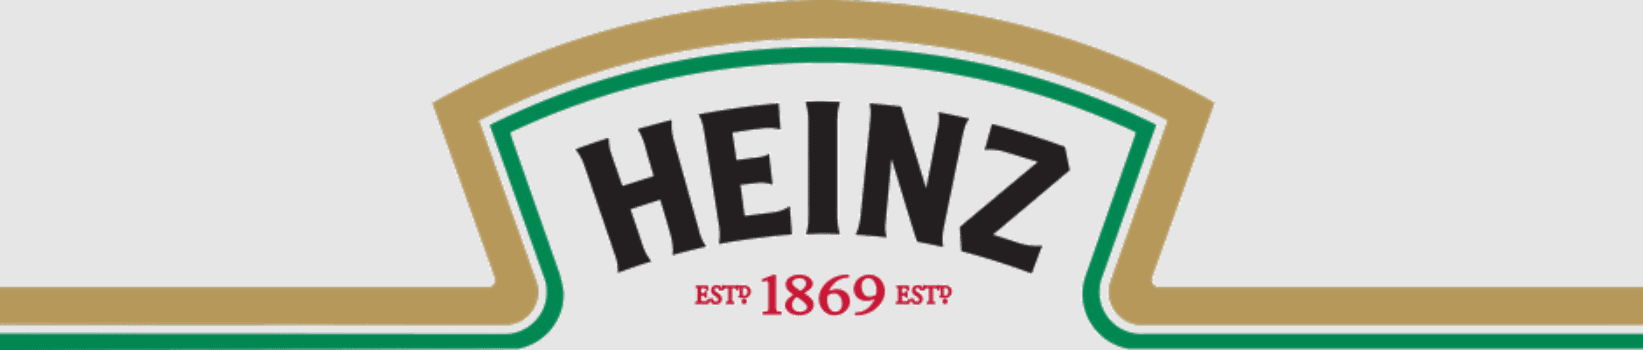 Heinz-logo